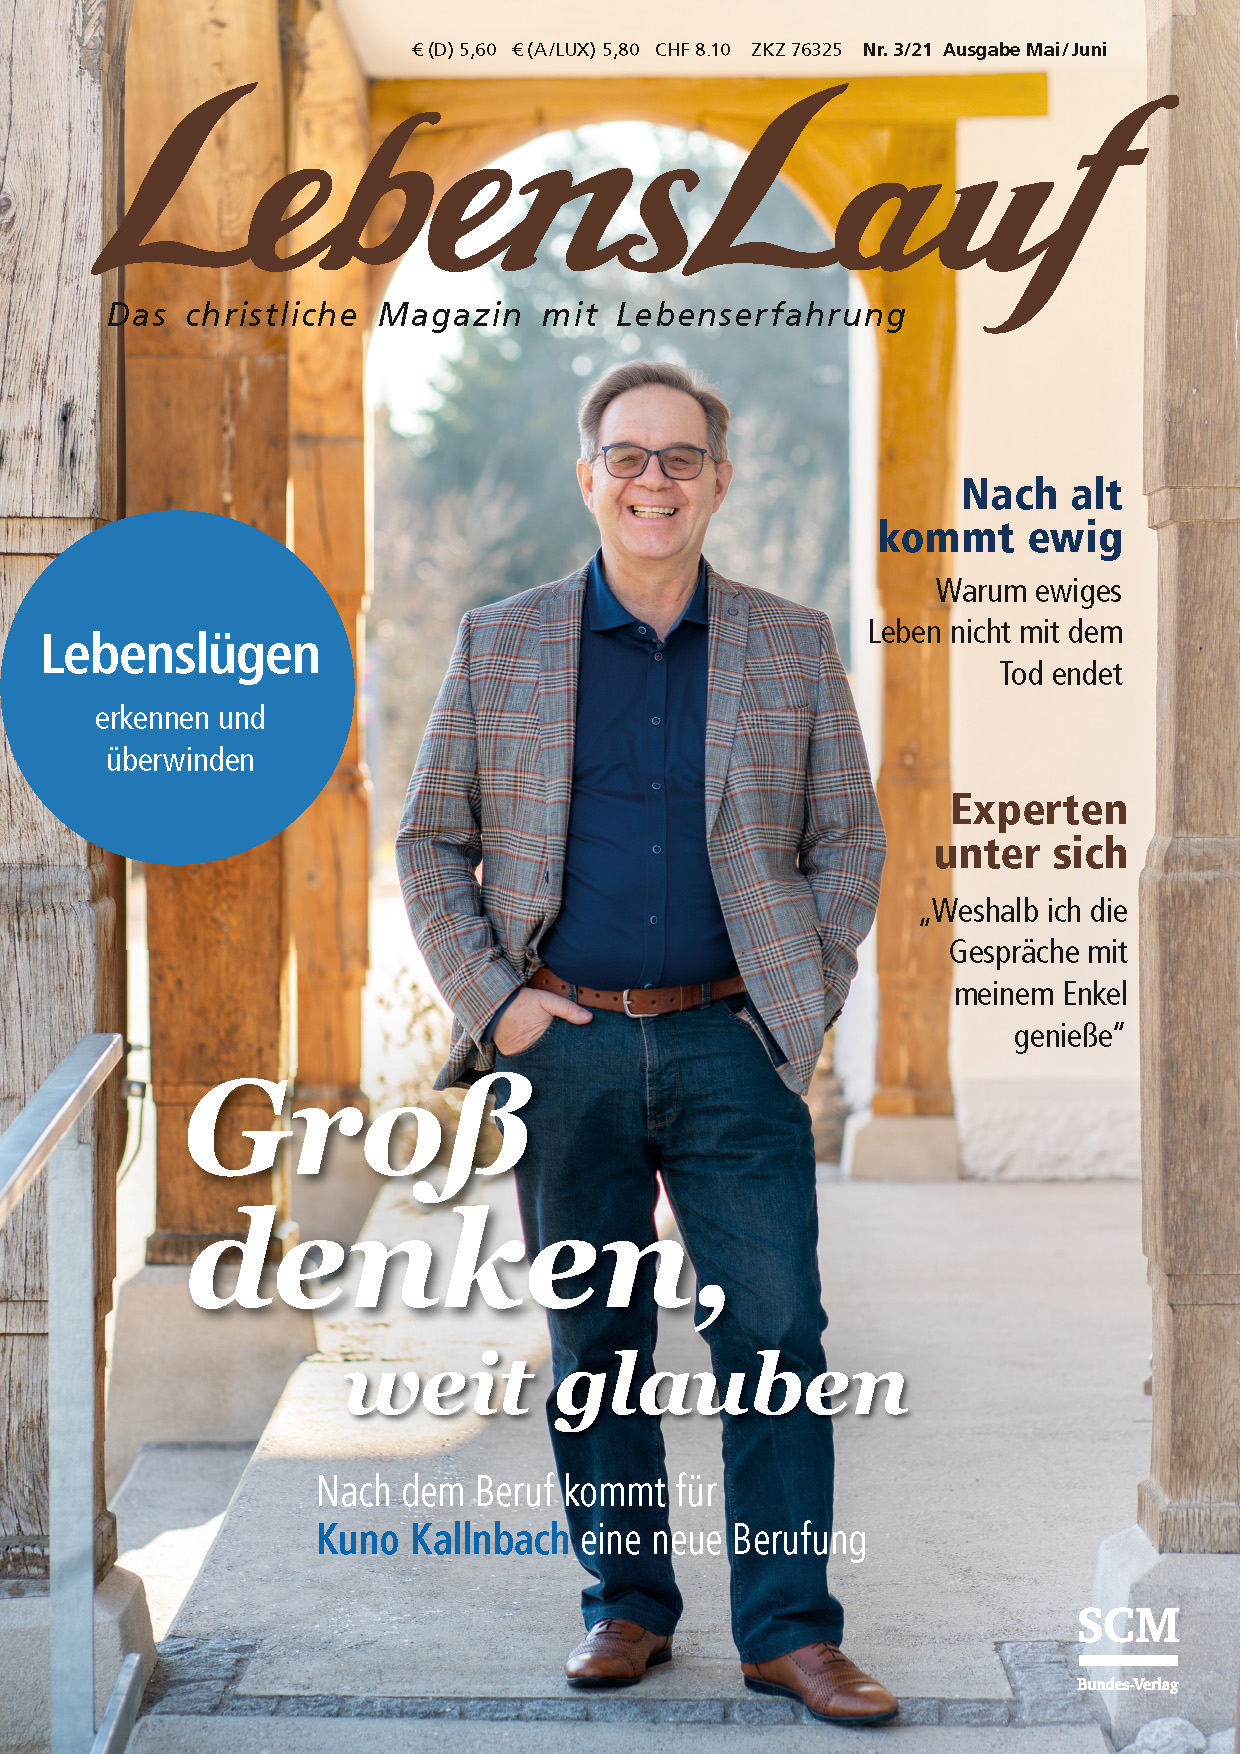 LebensLauf - Abogutschein - Cover